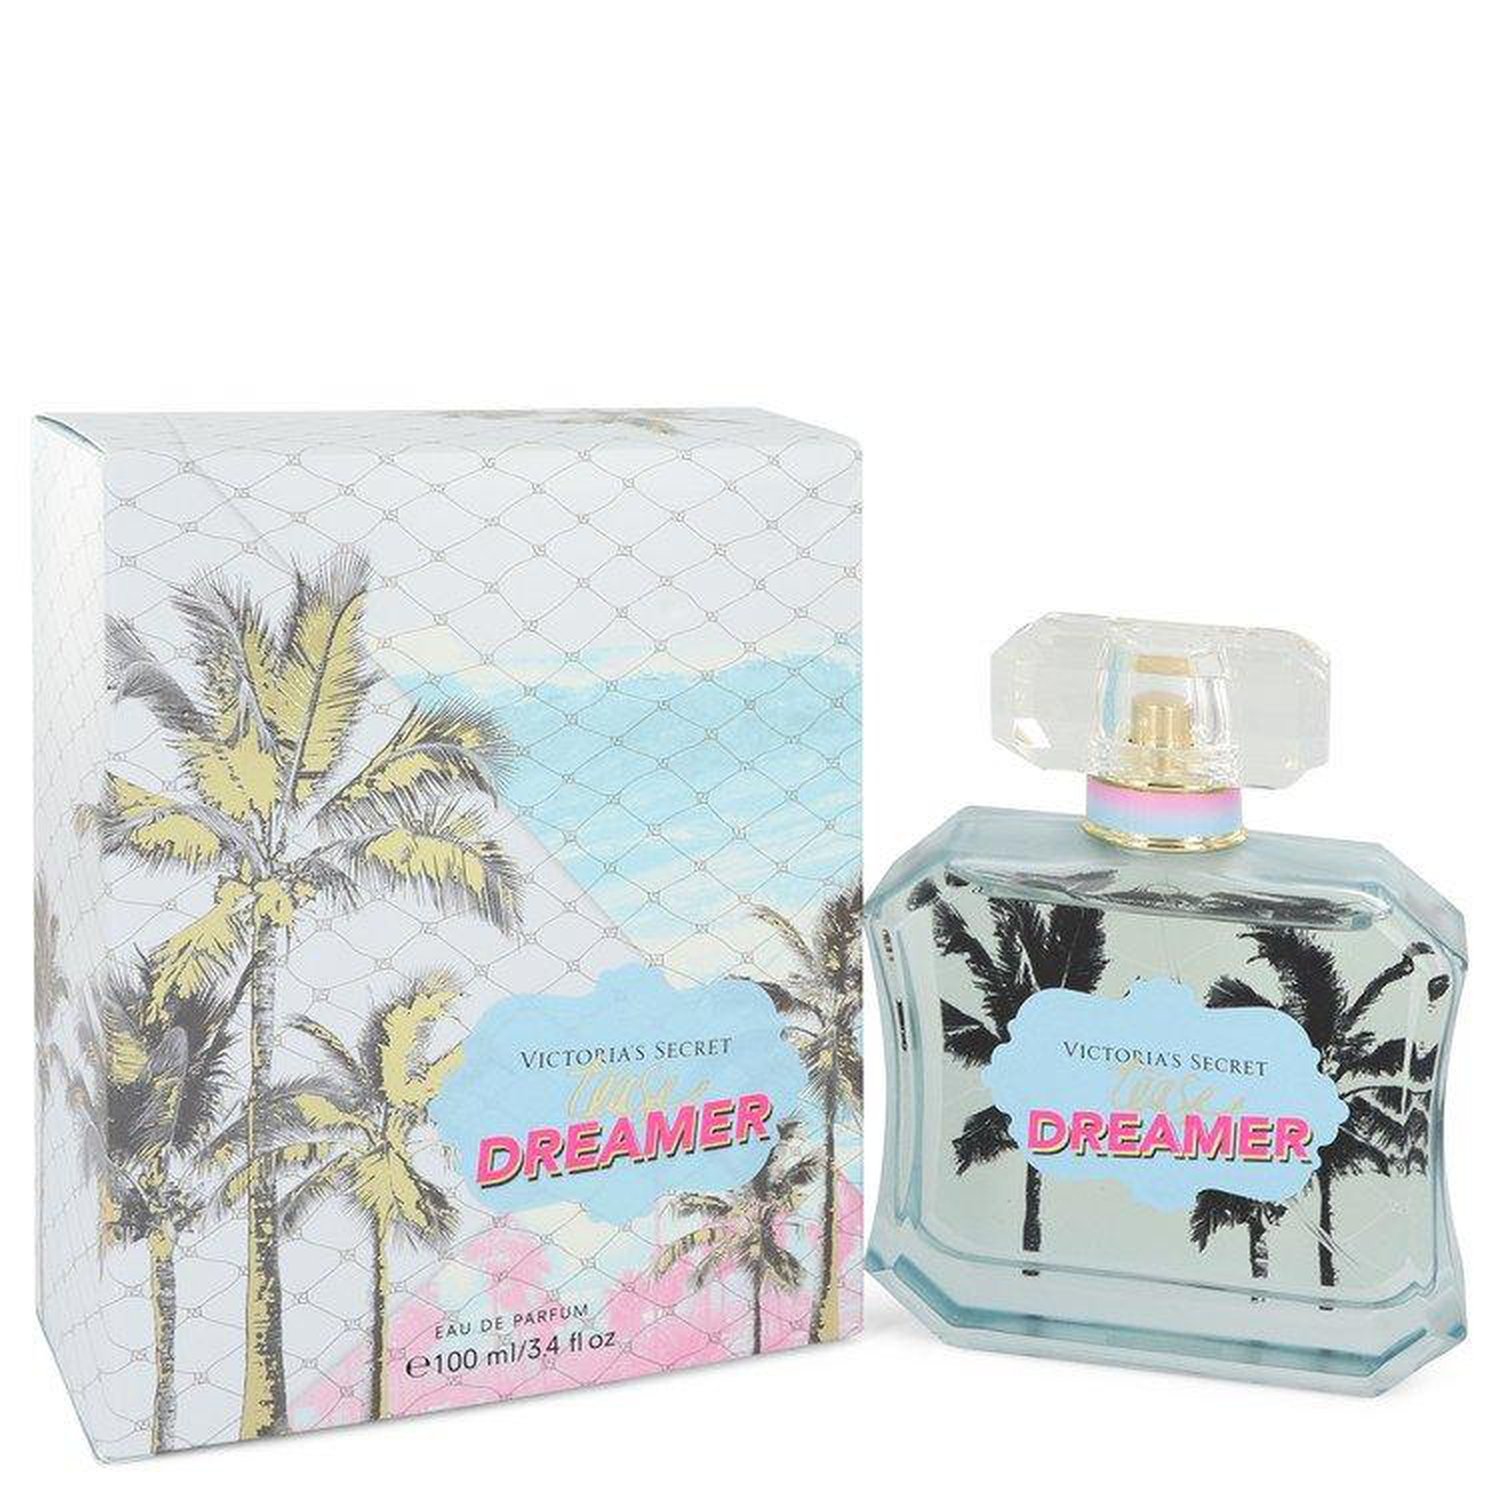 Victoria's Secret Tease Dreamer By Victoria’s Secret Eau De Parfum Spray 3.4 Oz